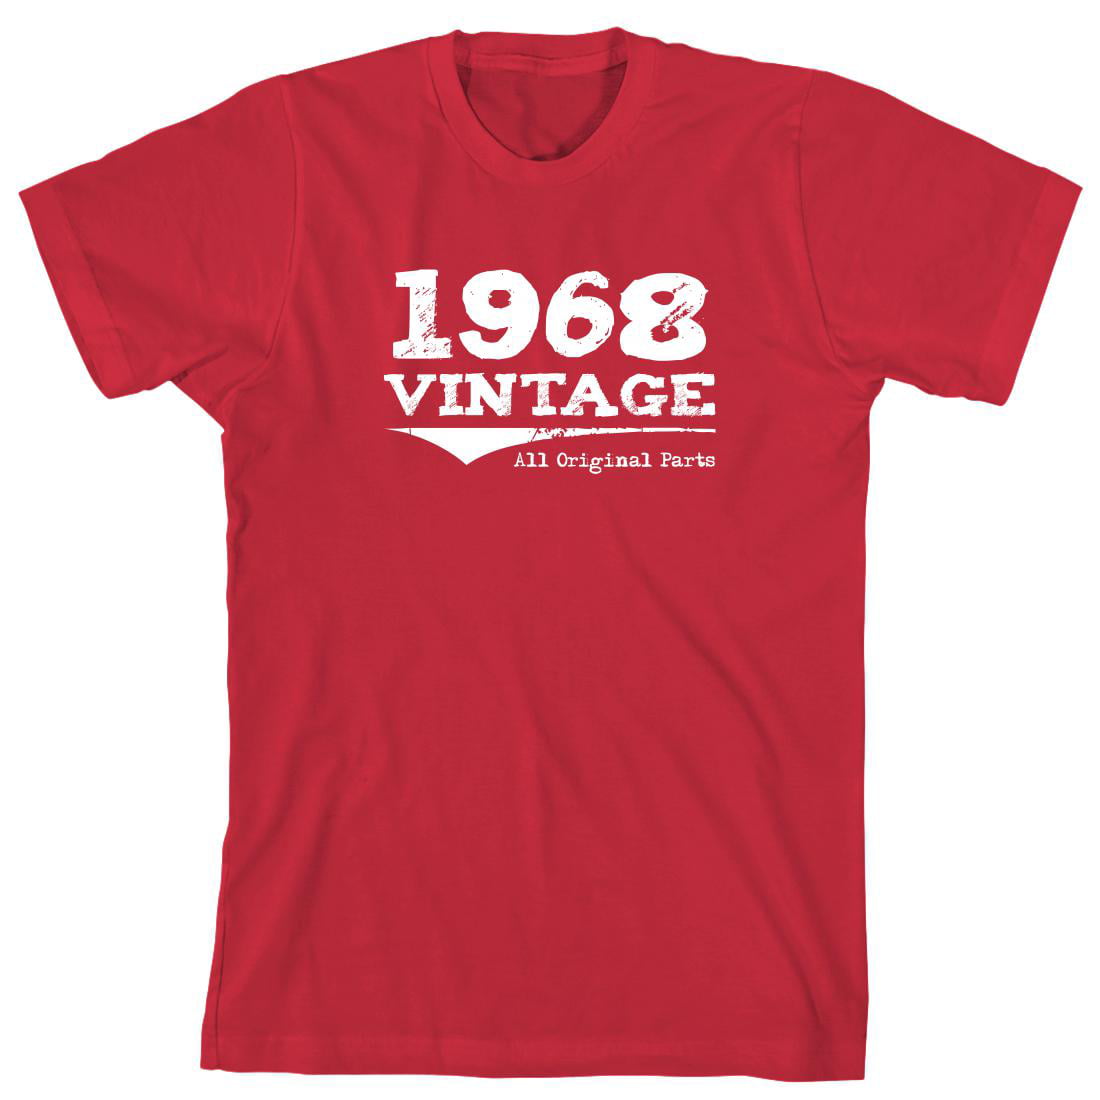 Vintage 1968 All Original Parts Men's Shirt - ID: 939 - Walmart.com